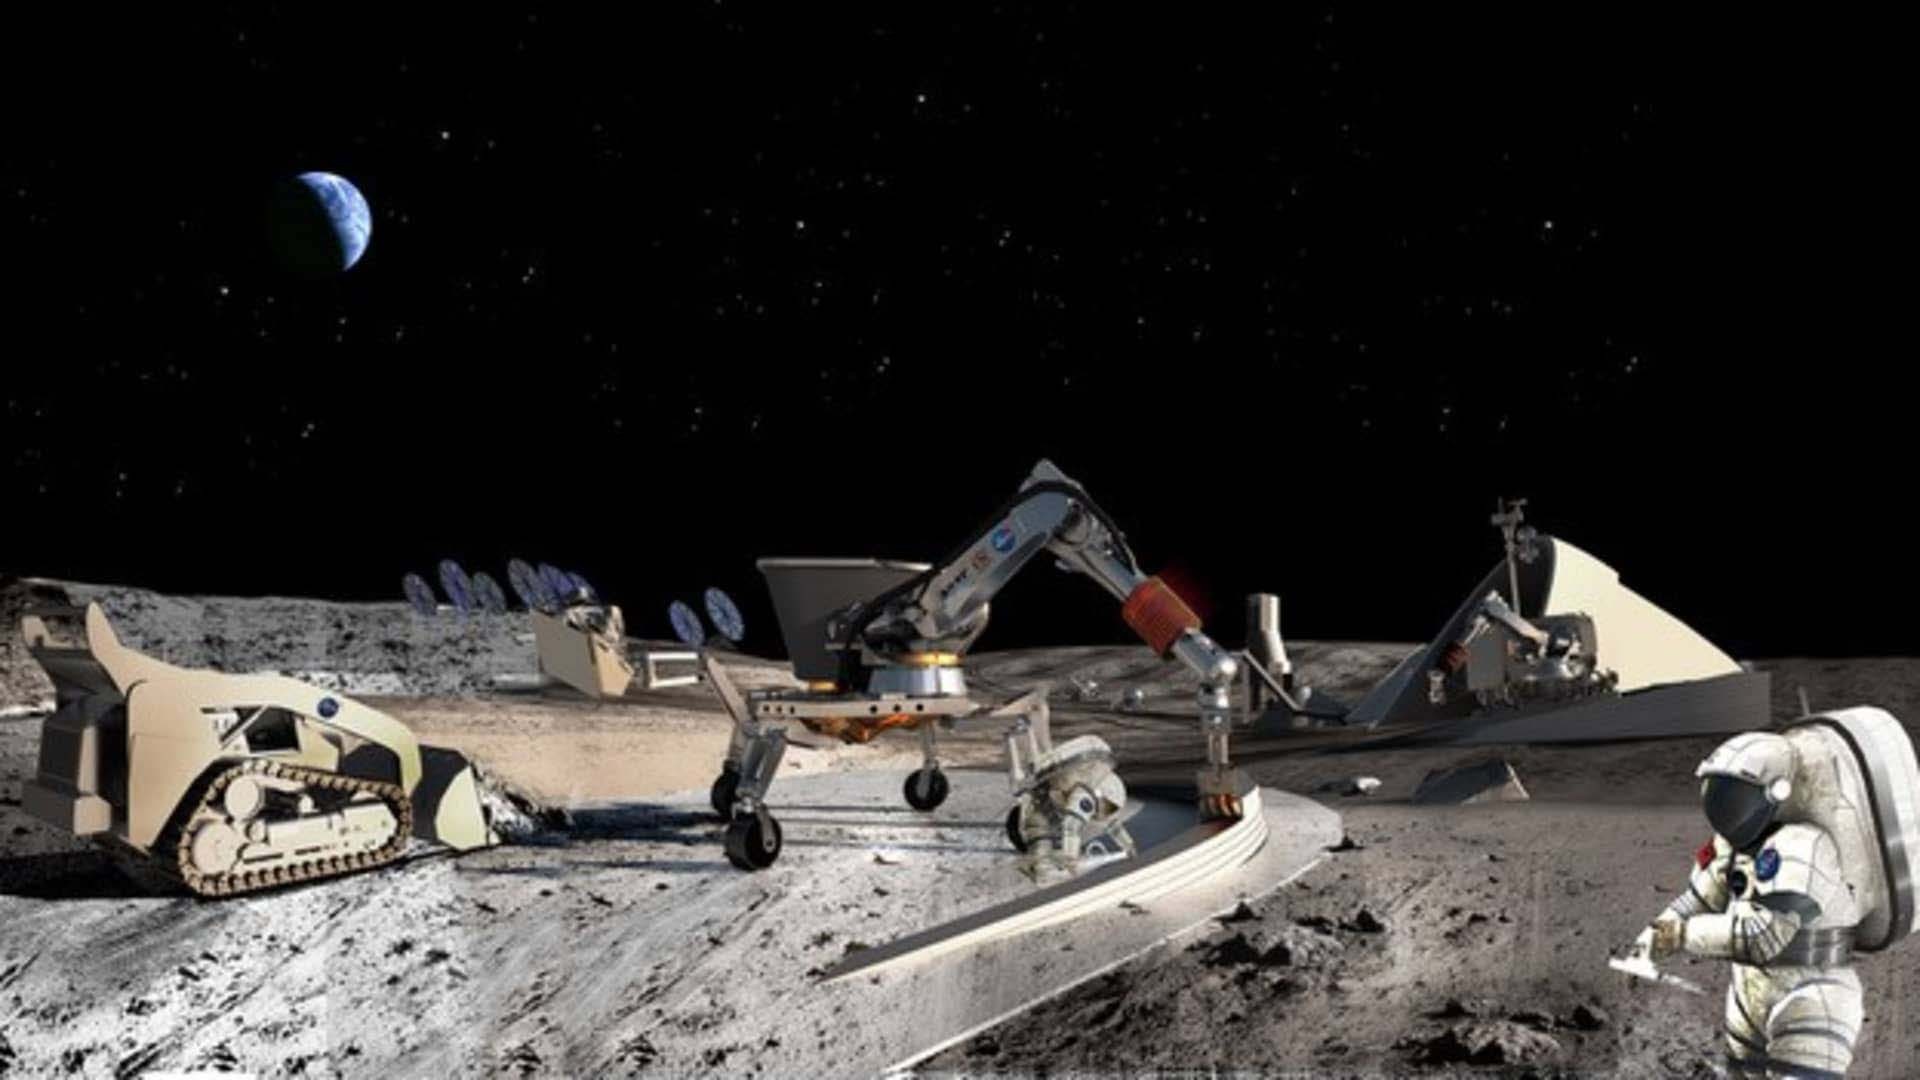 Khai thác bề mặt Mặt trăng có thể phá hỏng một số địa điểm được coi là nguồn nghiên cứu vô giá đối với khoa học. Ảnh minh họa. (Nguồn: CNBC)